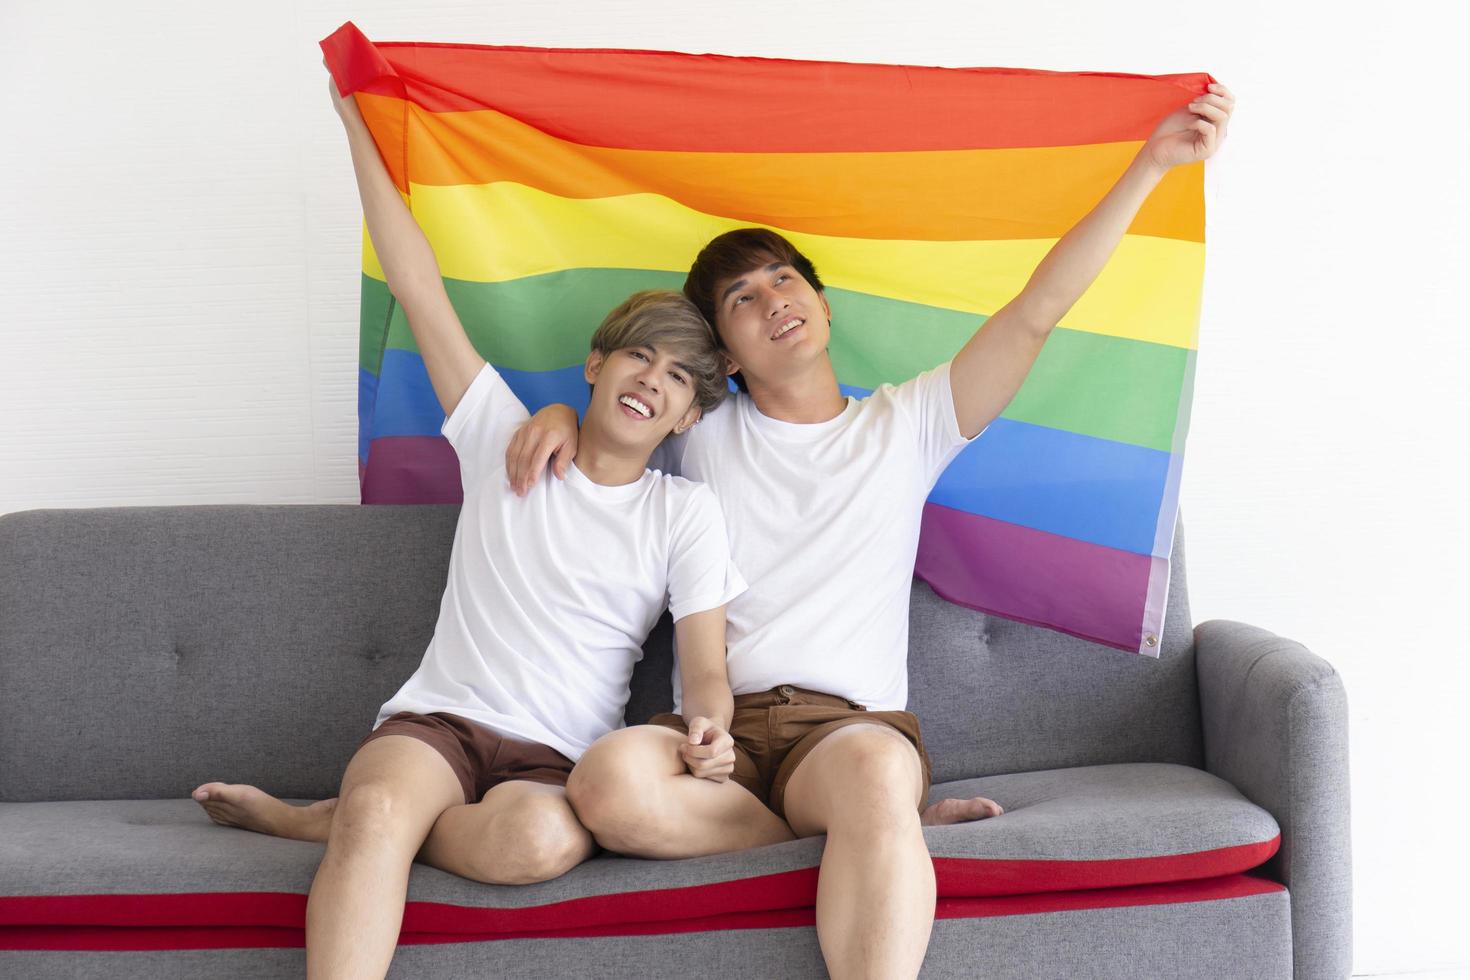 un couple masculin avec un homme asiatique assis sur un canapé, tenant un drapeau multicolore avec des signes de lgbt sur la tête, exprimant ouvertement des hommes homosexuels acceptant les idées lgbt. photo